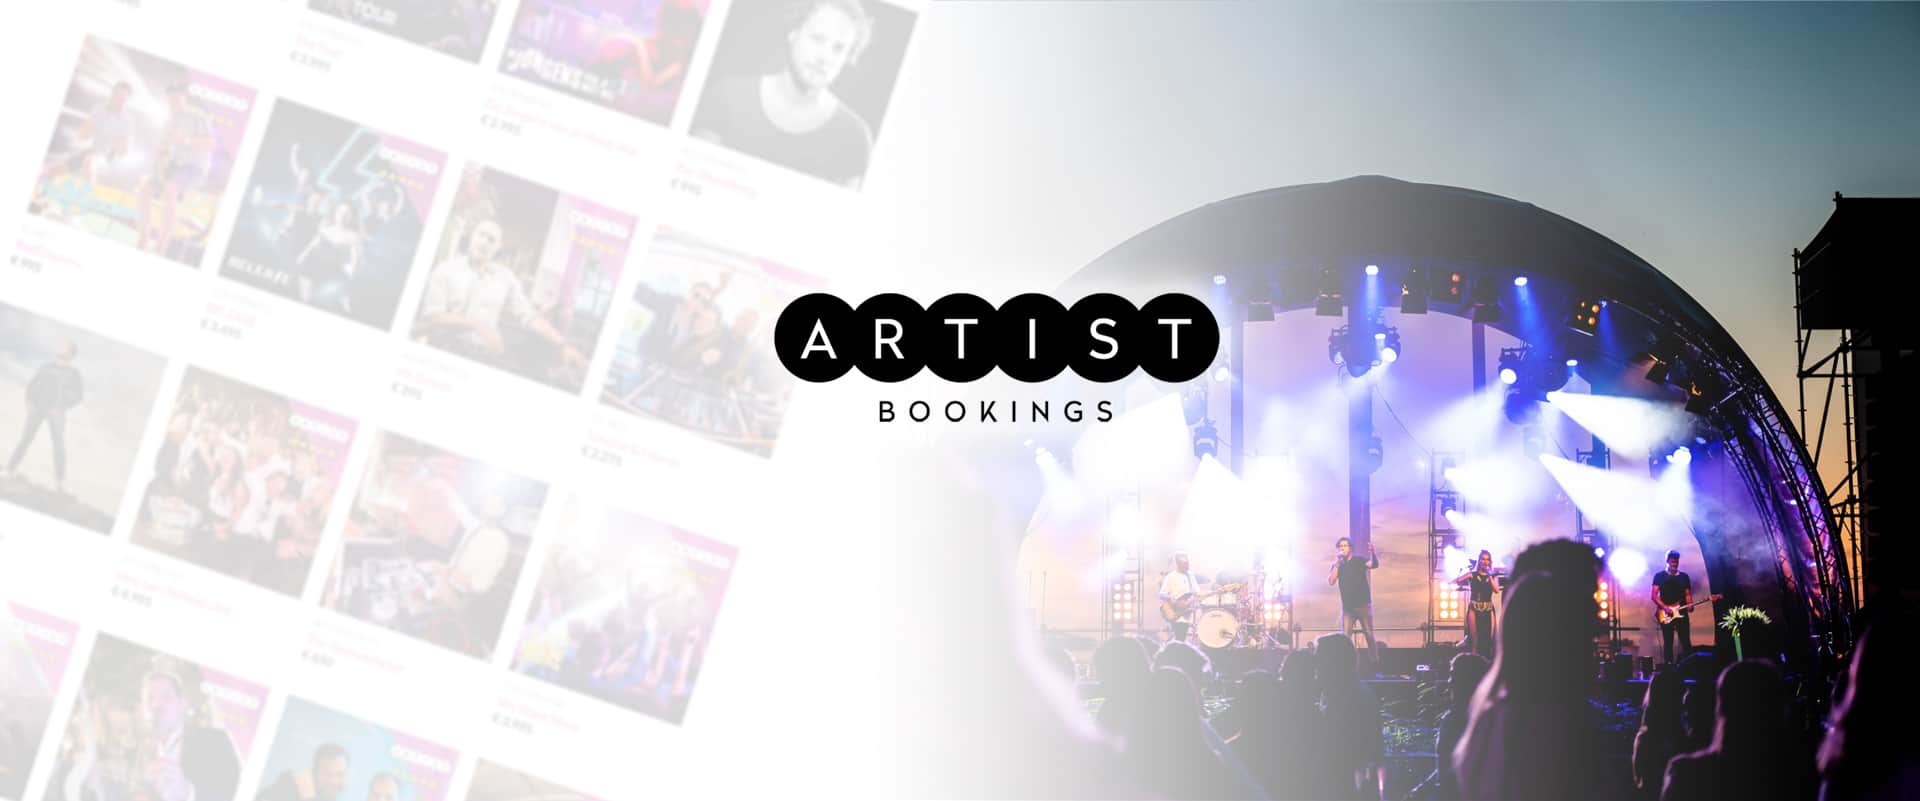 Artist Bookings